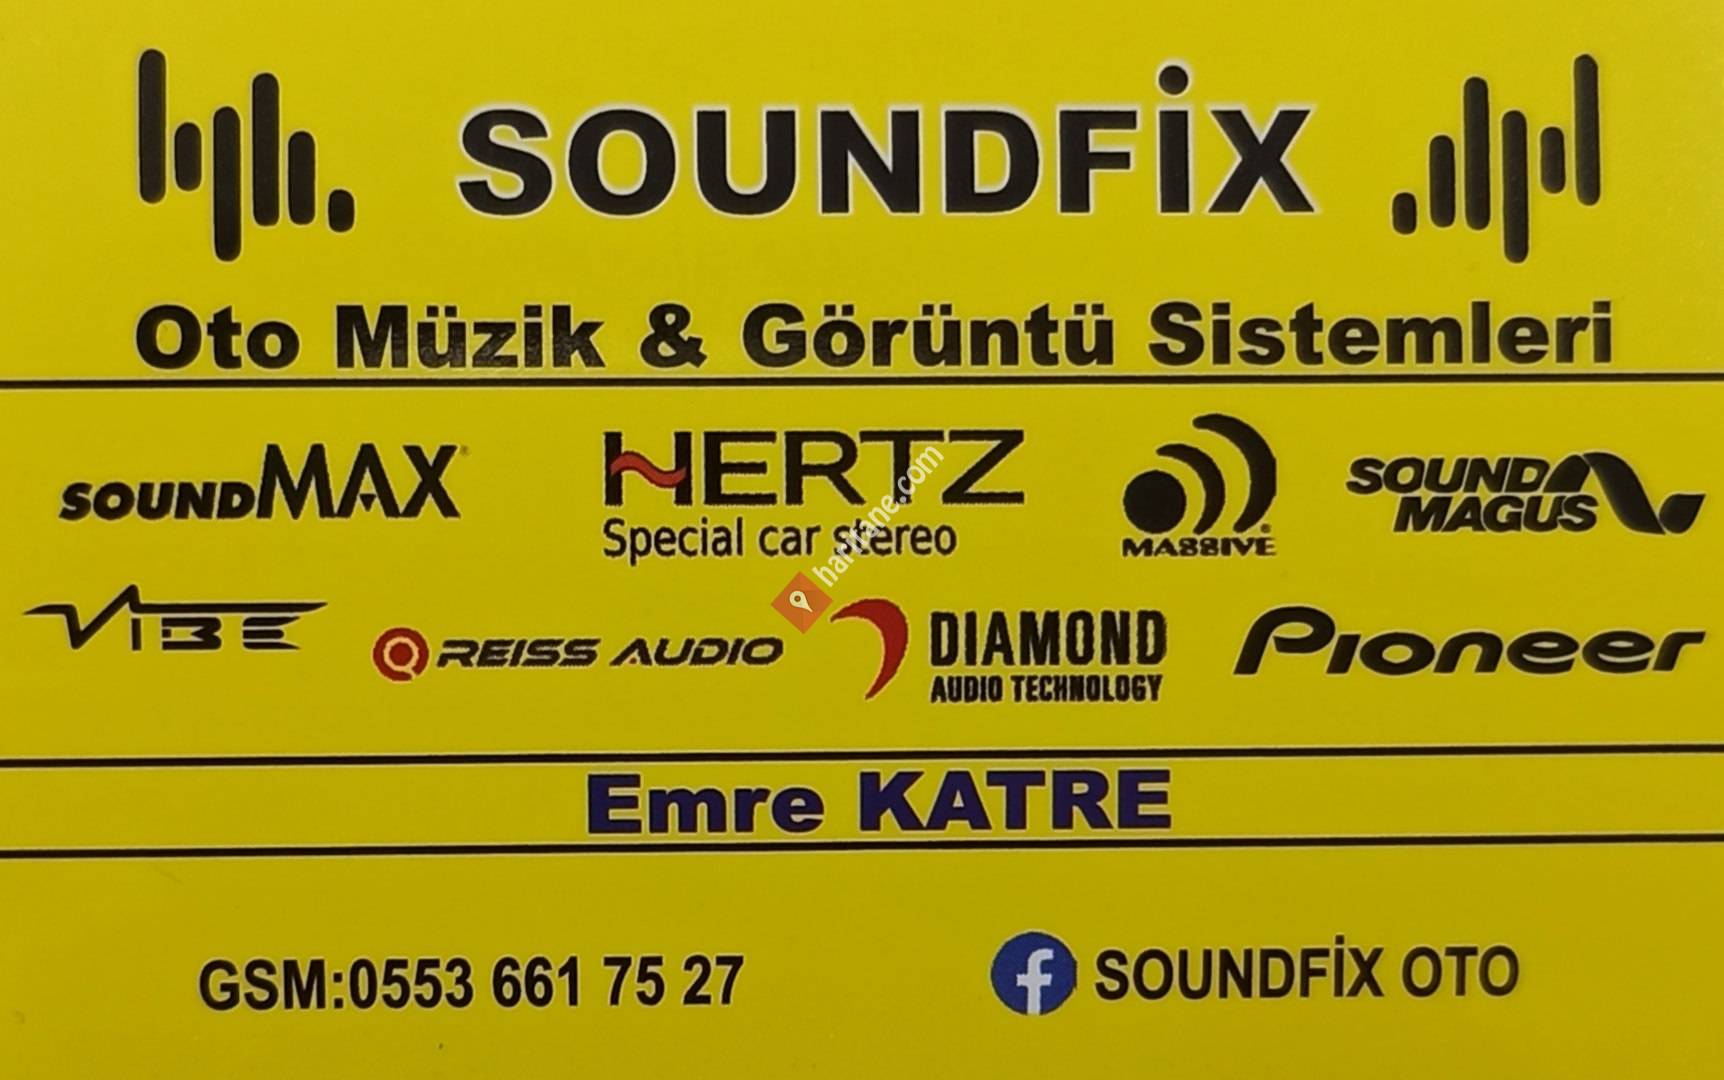 SoundFix oto görüntü ve ses sistemleri